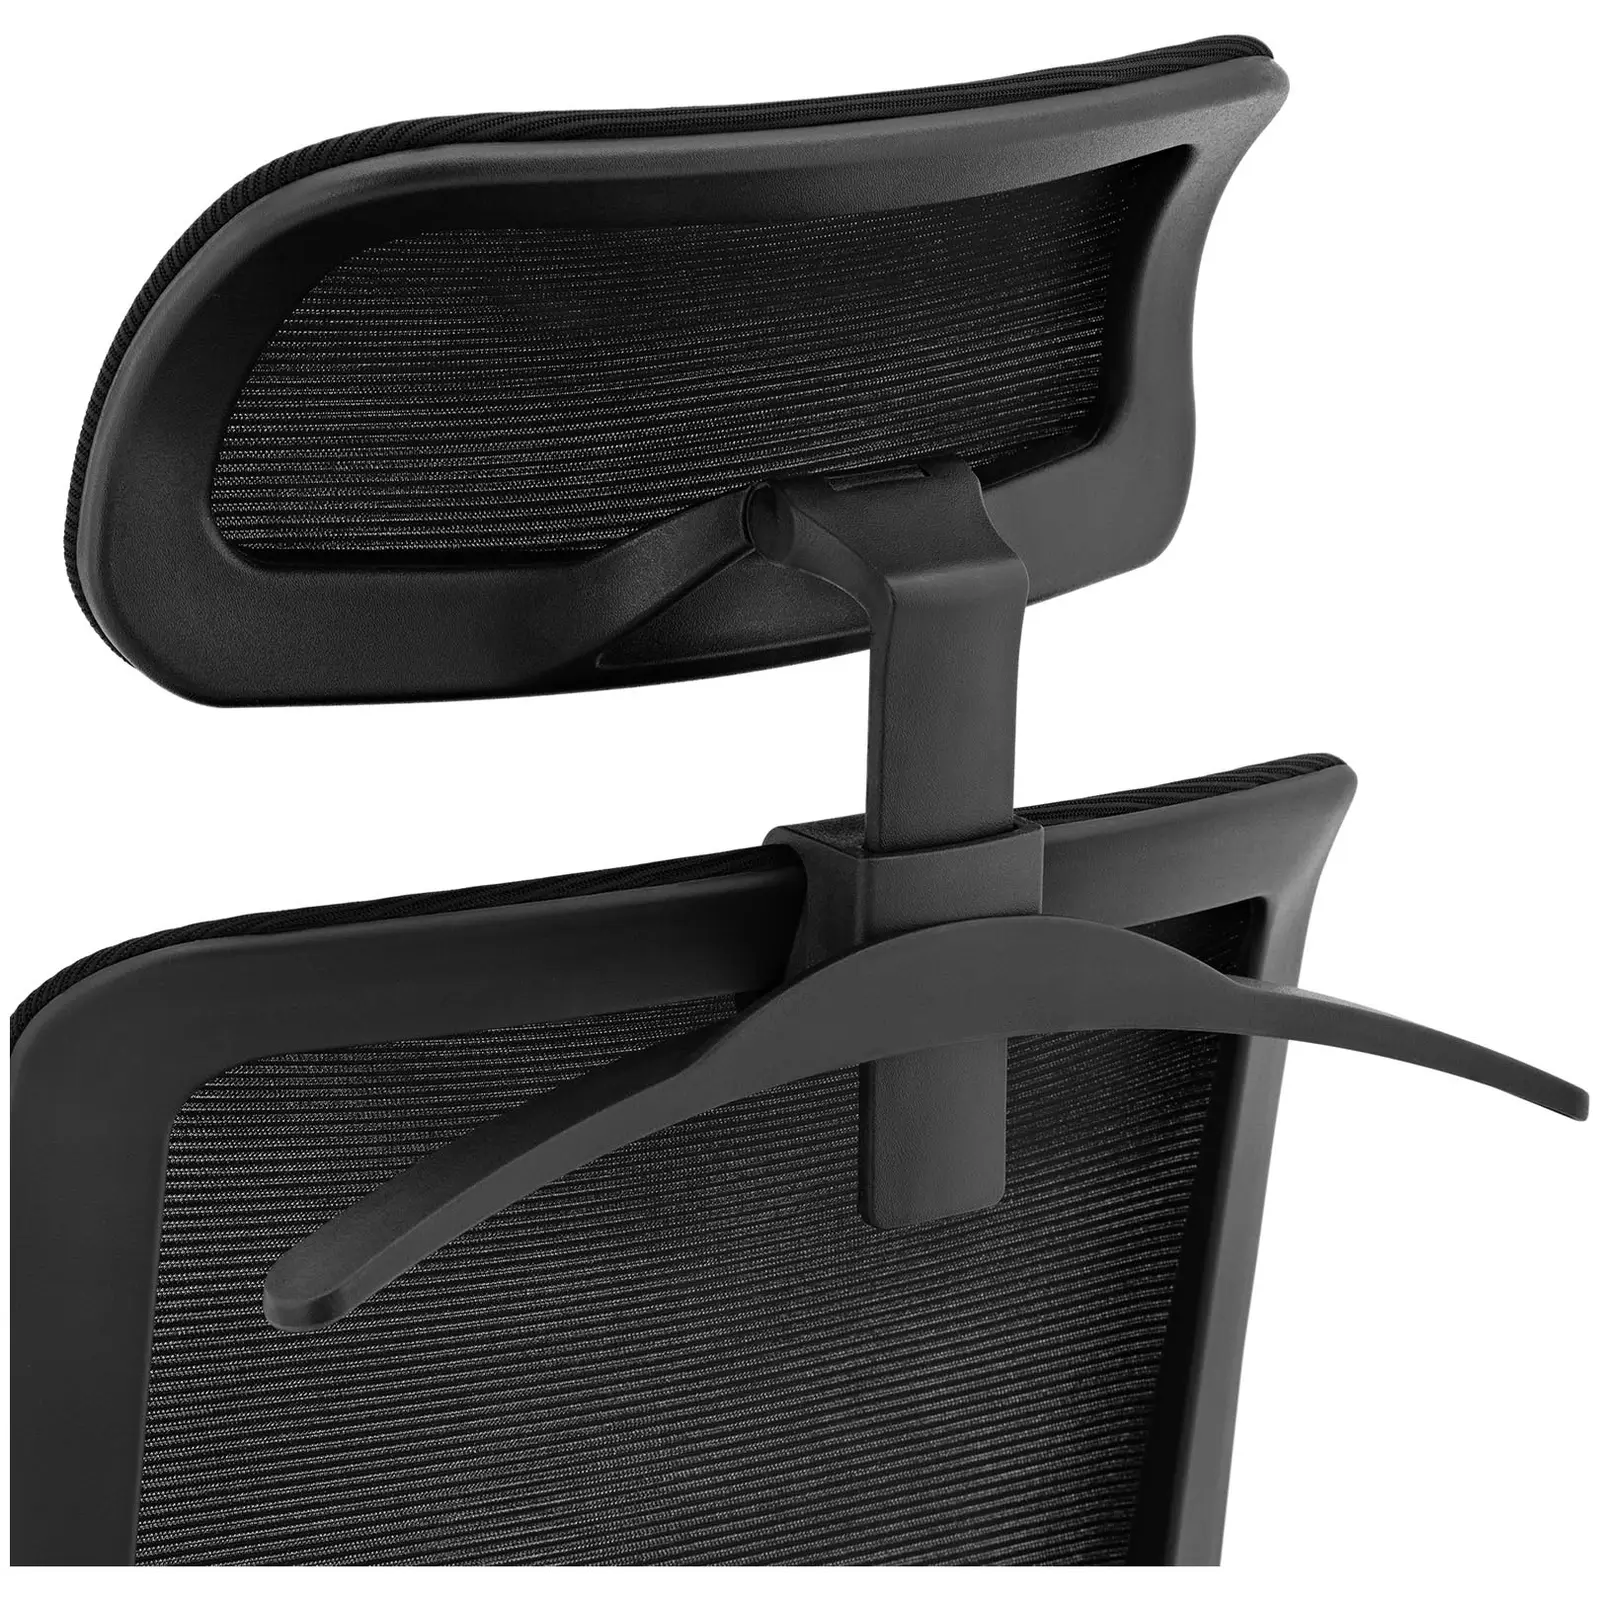 Scaun de birou - spătar din plasă - tetieră - {{dimensiunea scaunului_cm_1624}} cm scaun - până la {{capacitate_totală_2240}} kg - negru / albastru / gri